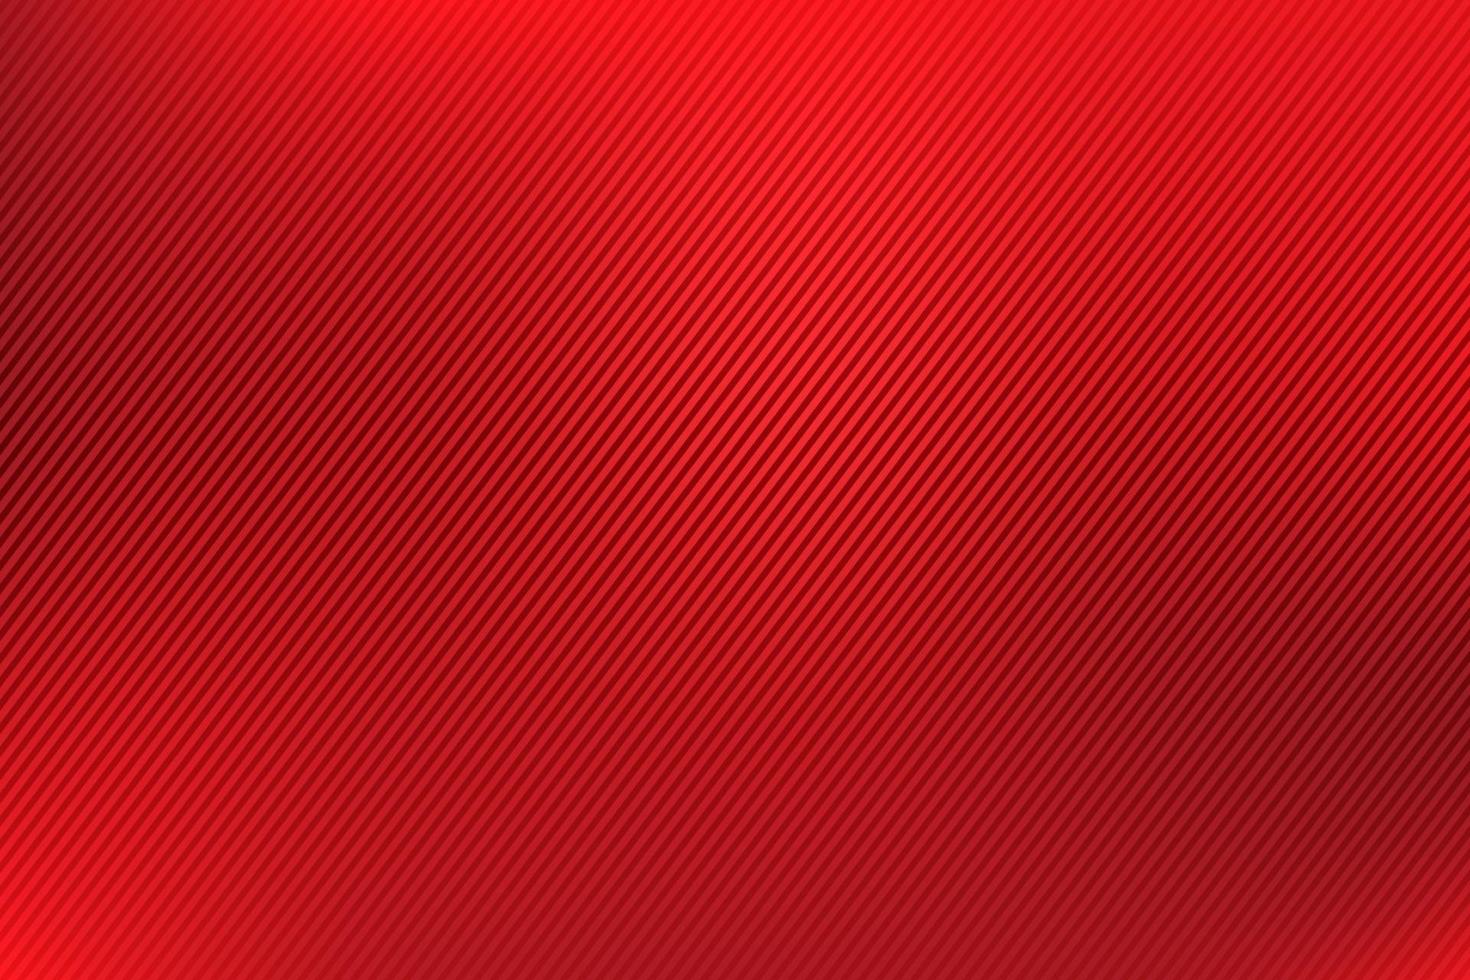 abstracte heldere rode wazig gradiënt stijl achtergrond met diagonale lijnen getextureerde. elegante en luxe stijl. moderne en minimale sjabloon. vector